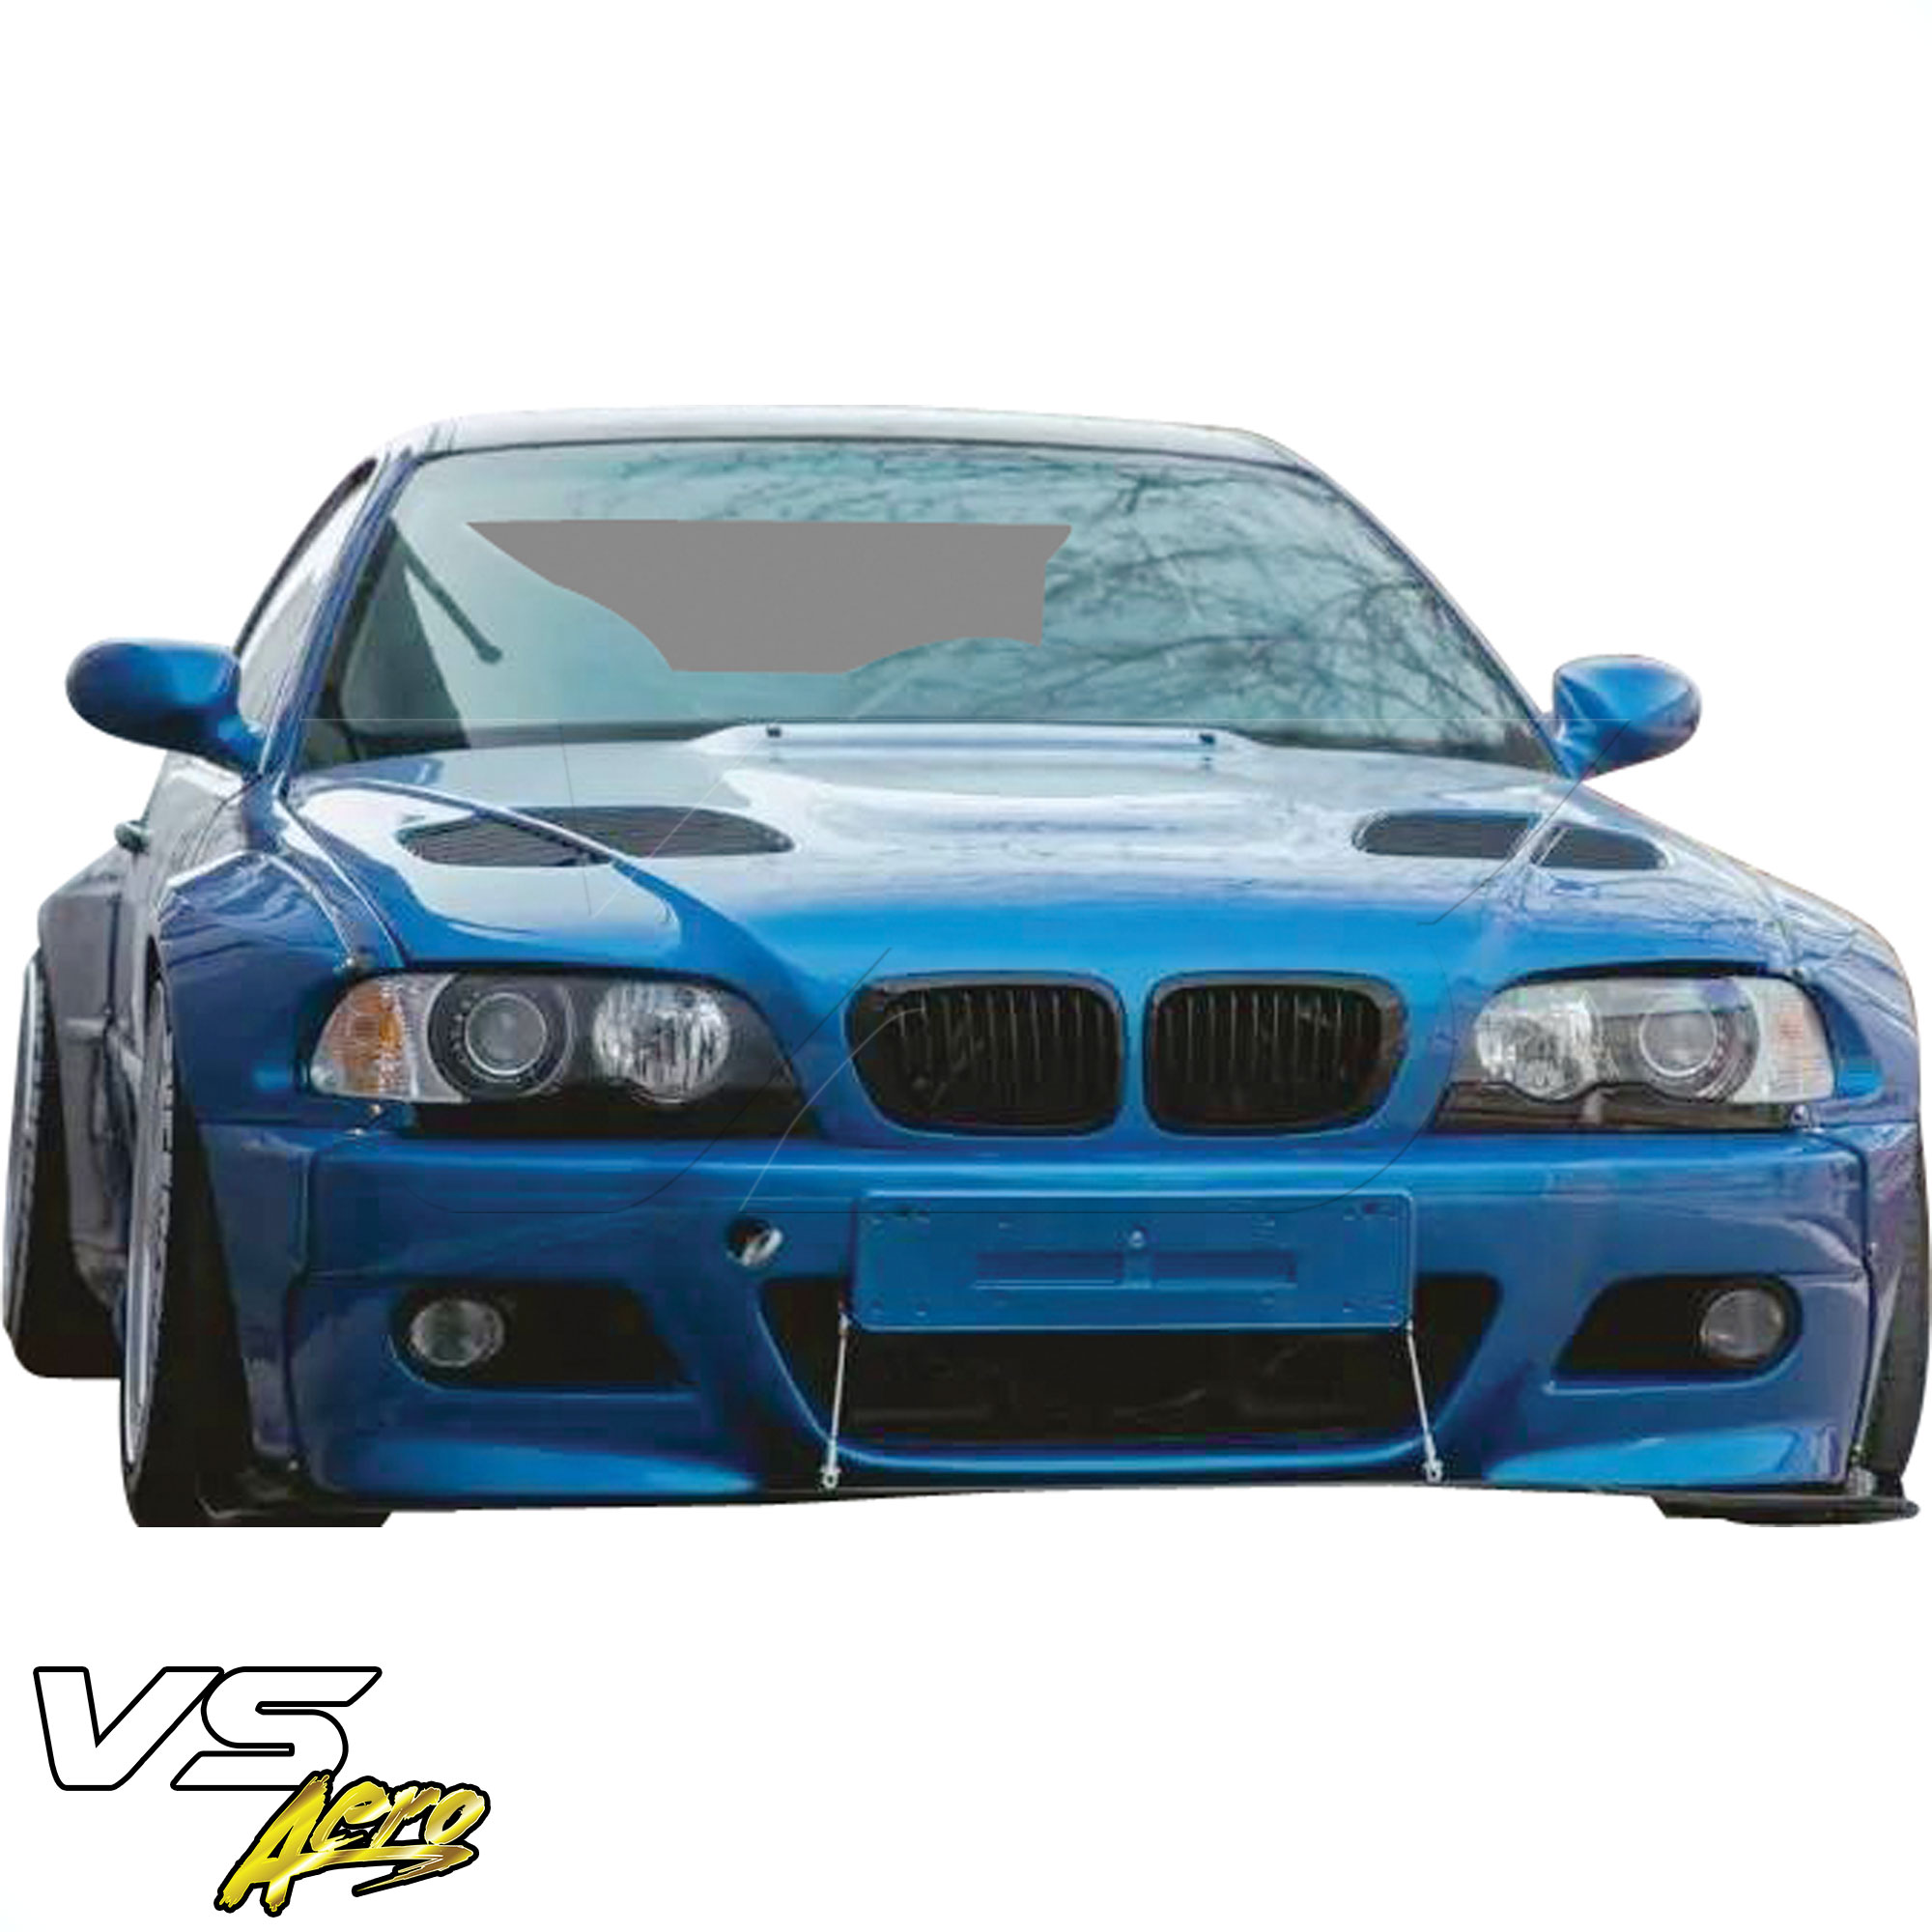 VSaero FRP TKYO Wide Body Front Lip > BMW 3-Series 325Ci 330Ci E46 1999-2001 > 2dr Coupe - Image 5